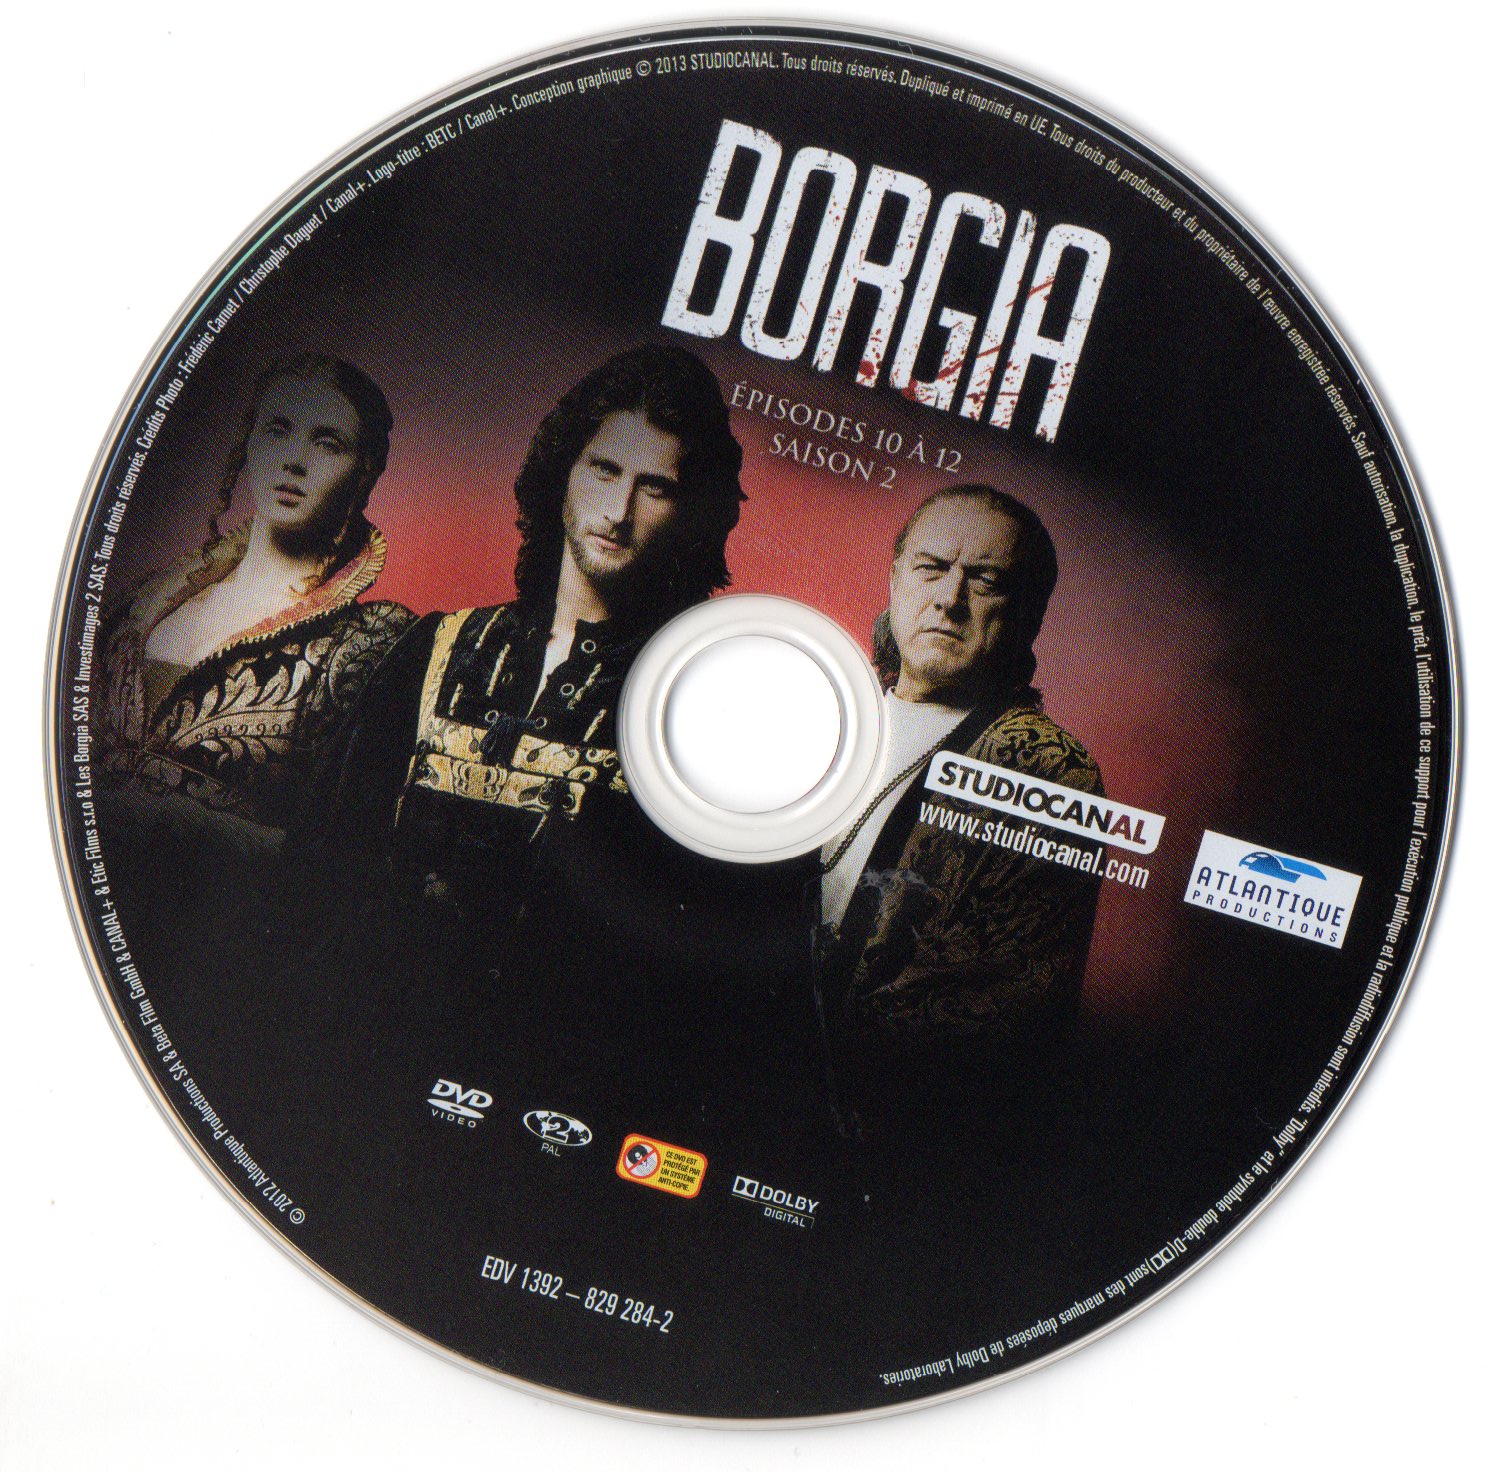 Borgia Saison 2 DVD 4